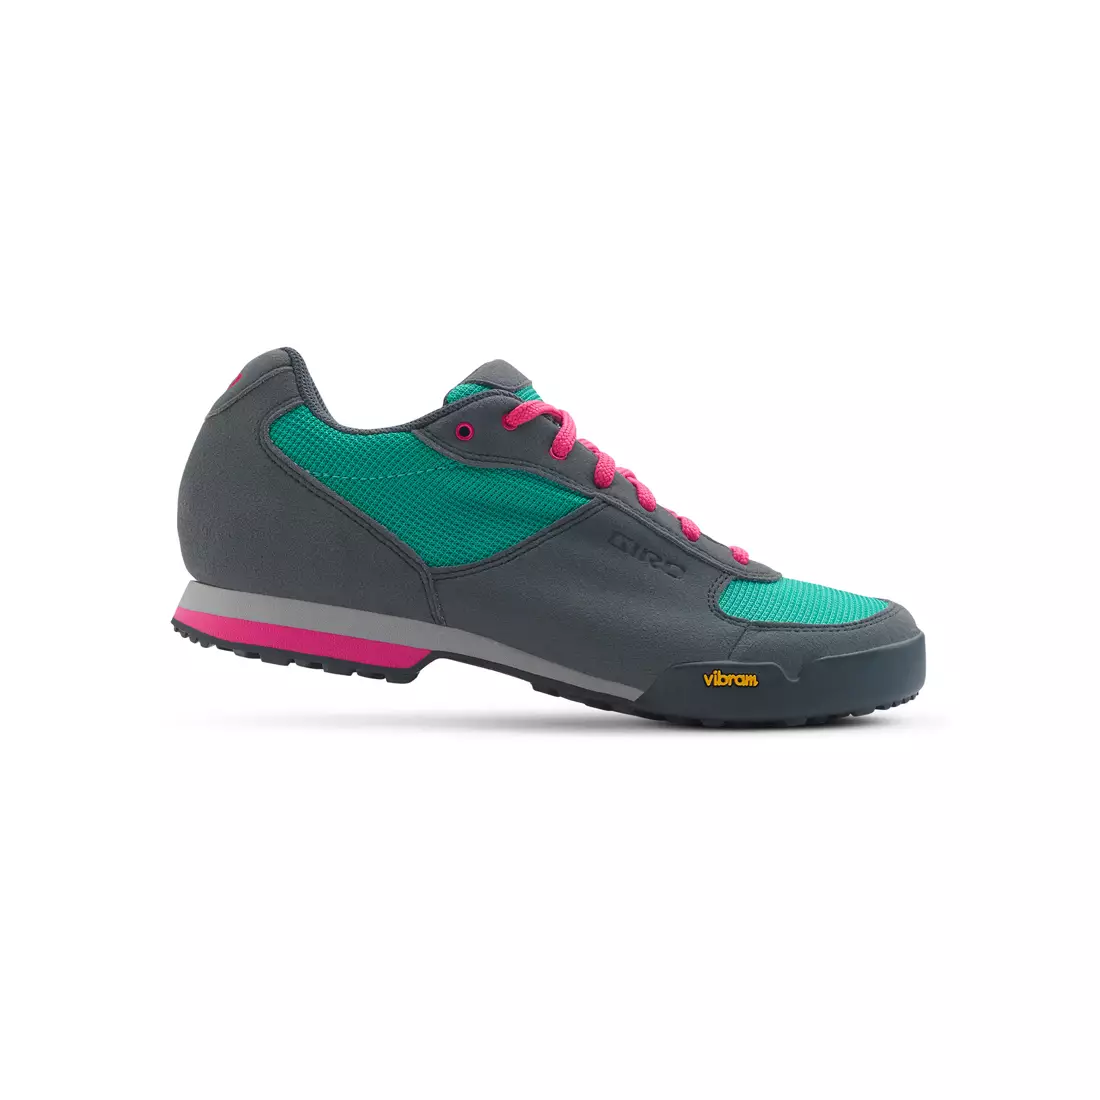 GIRO PETRA VR - pantofi de ciclism pentru femei gri-turcoaz-roz